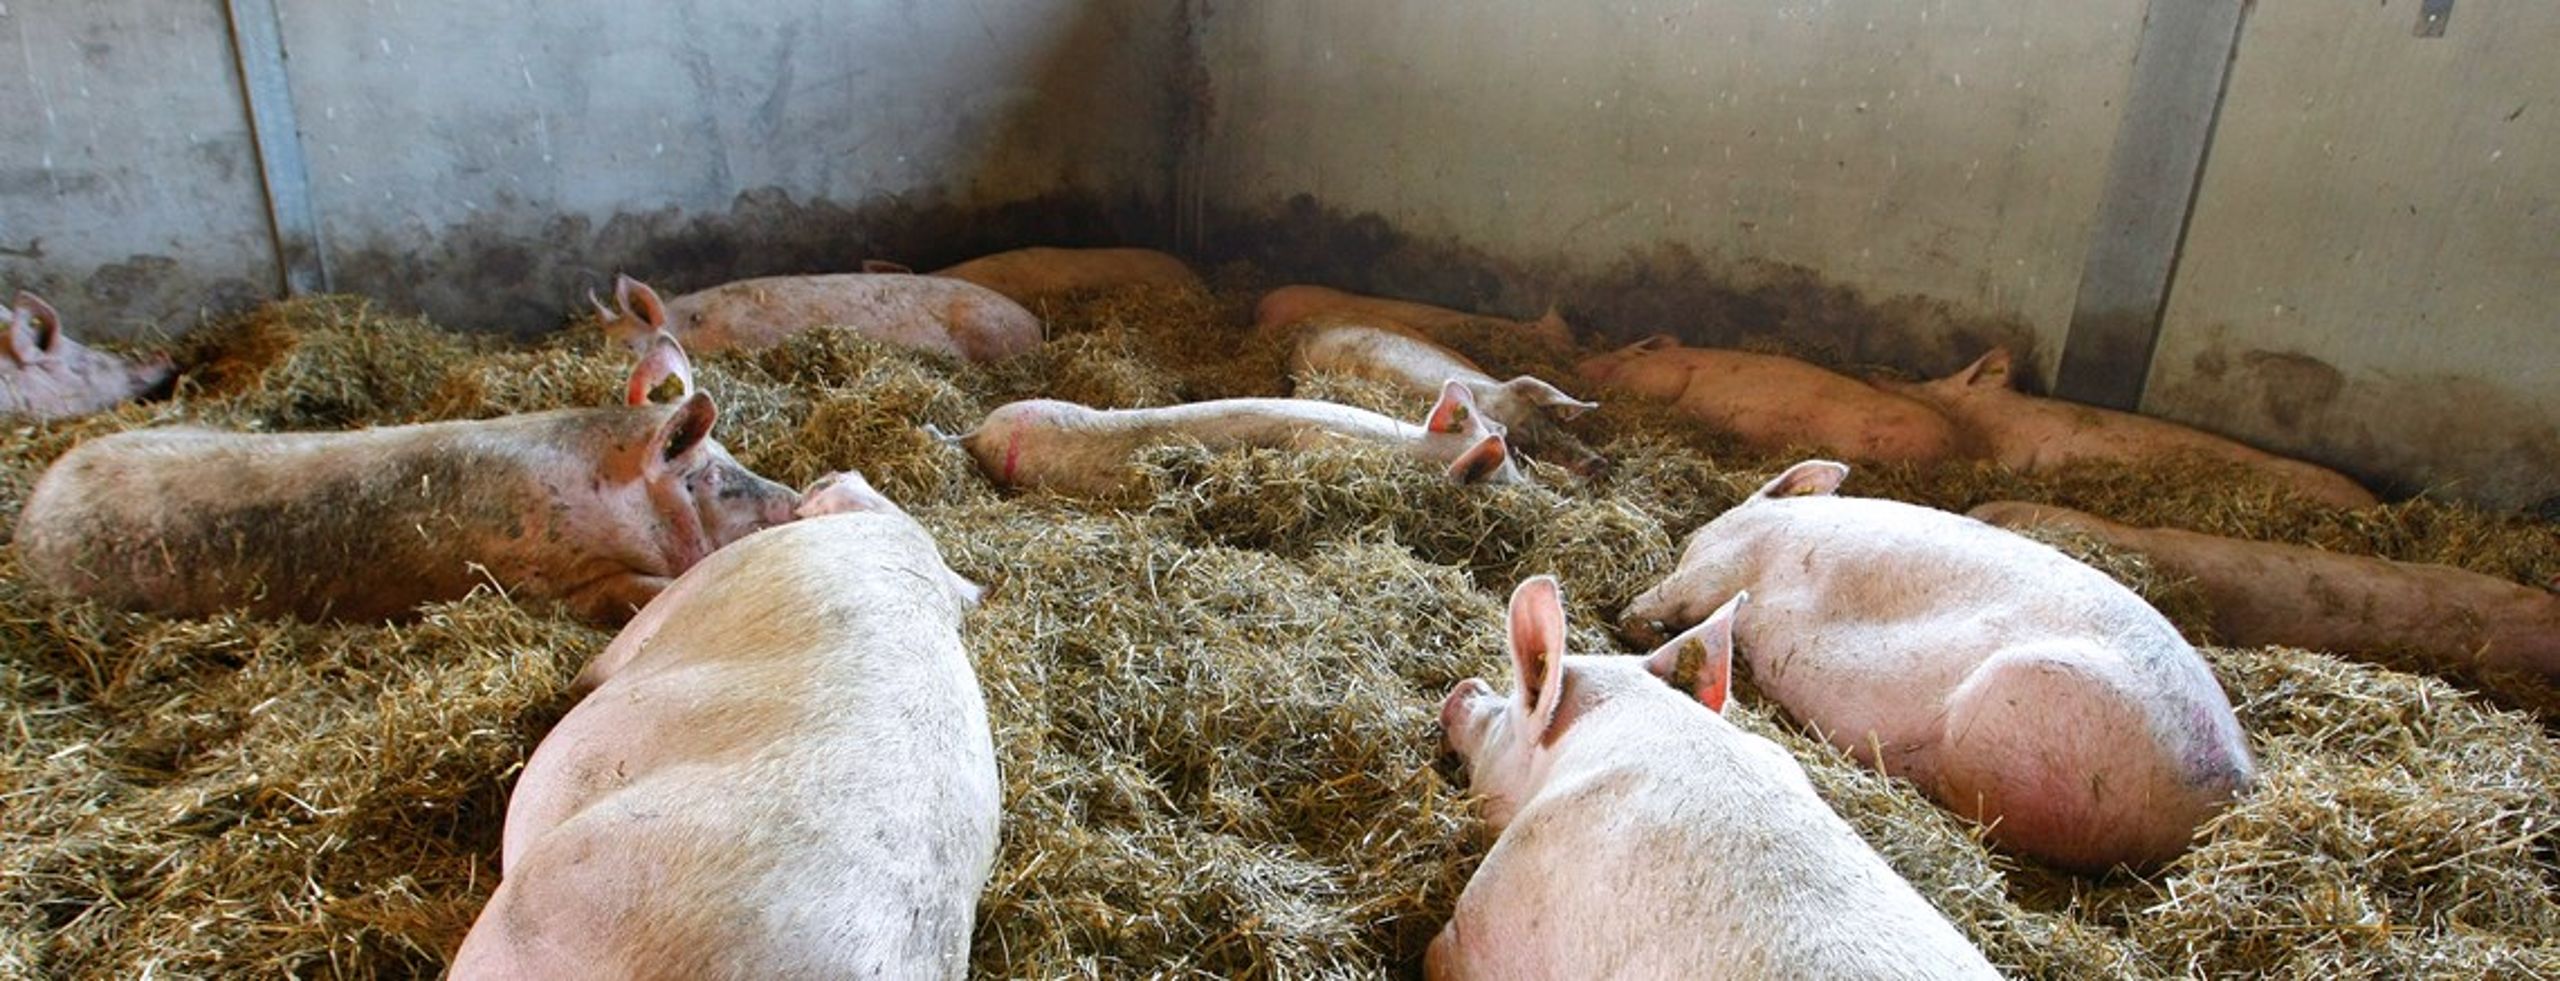 Mindre antibiotika til svinene er ikke nok til at bekæmpe MRSA, mener svineprofessor Jens Peter Nielsen.